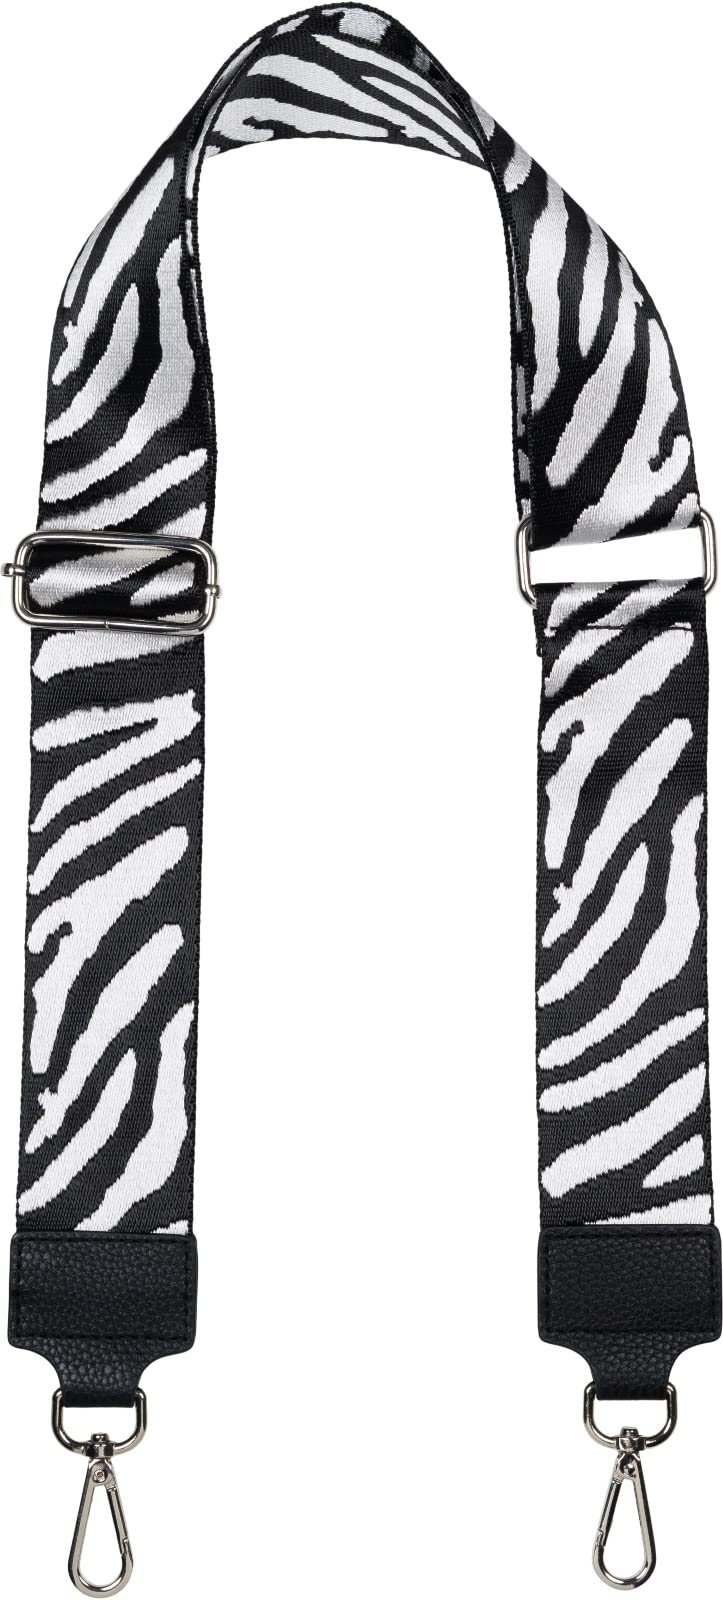 styleBREAKER Breiter Taschen Schulterriemen verstellbar mit Zebra Muster, Wechsel Taschengurt, Handyband, Handykette 02013033, Farbe:Weiß-Schwarz von styleBREAKER